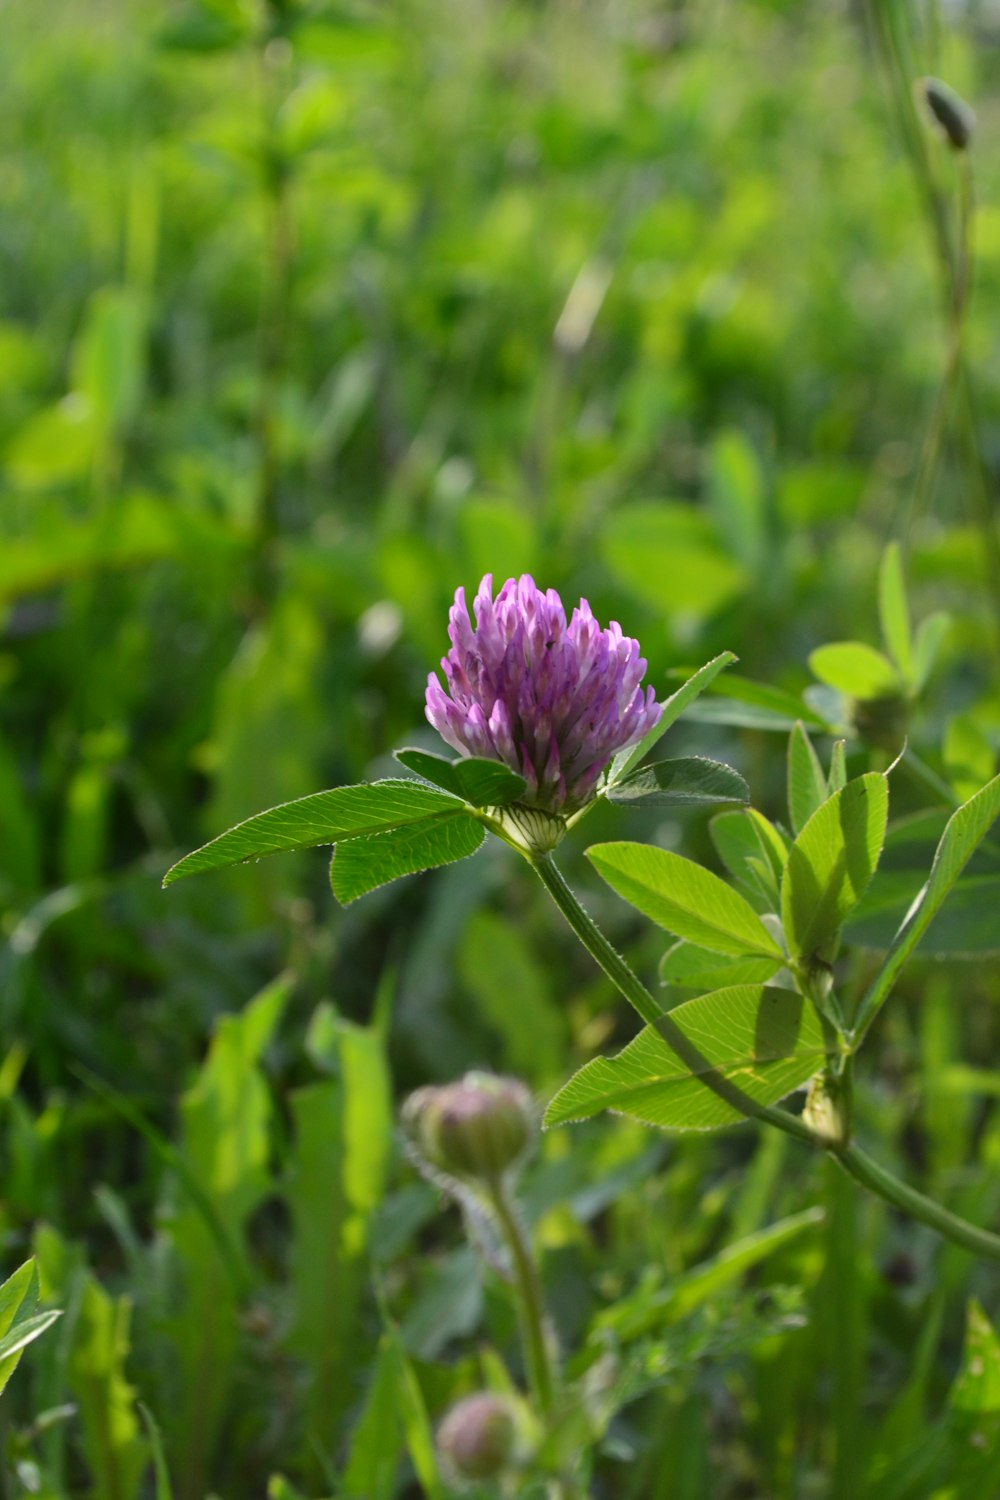 a purple flower in a field of green grass